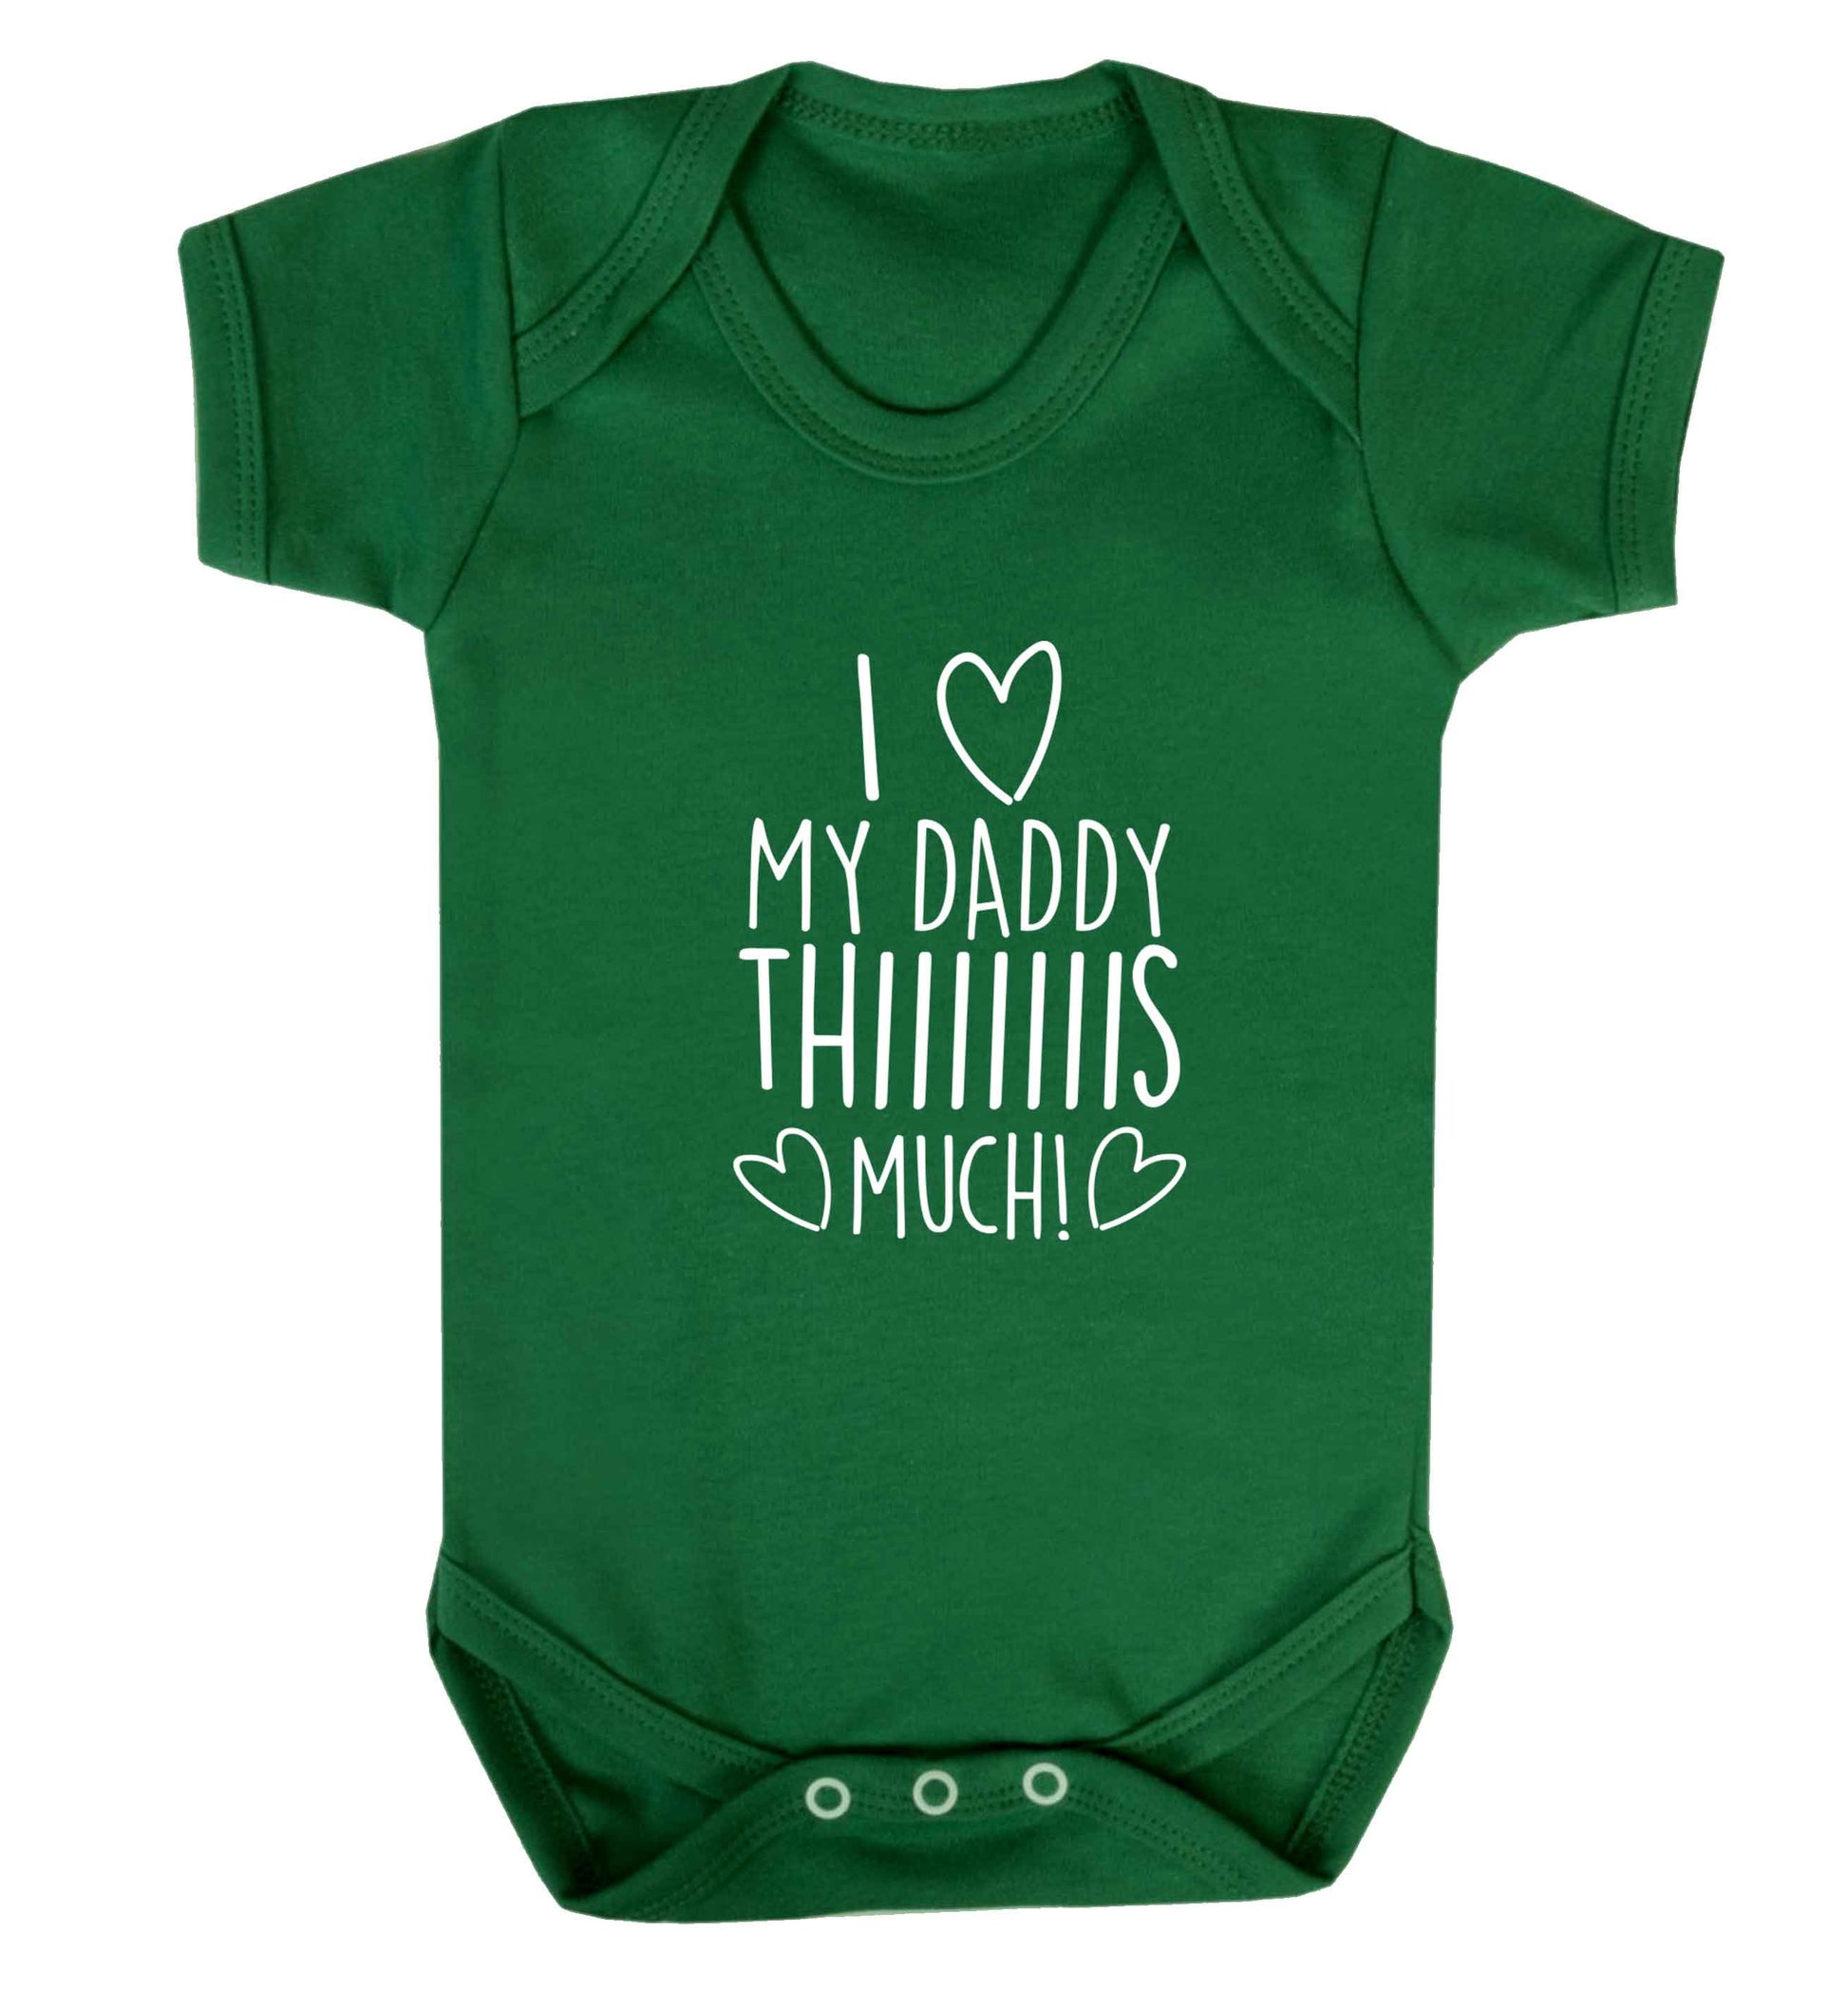 I love my daddy thiiiiis much! baby vest green 18-24 months